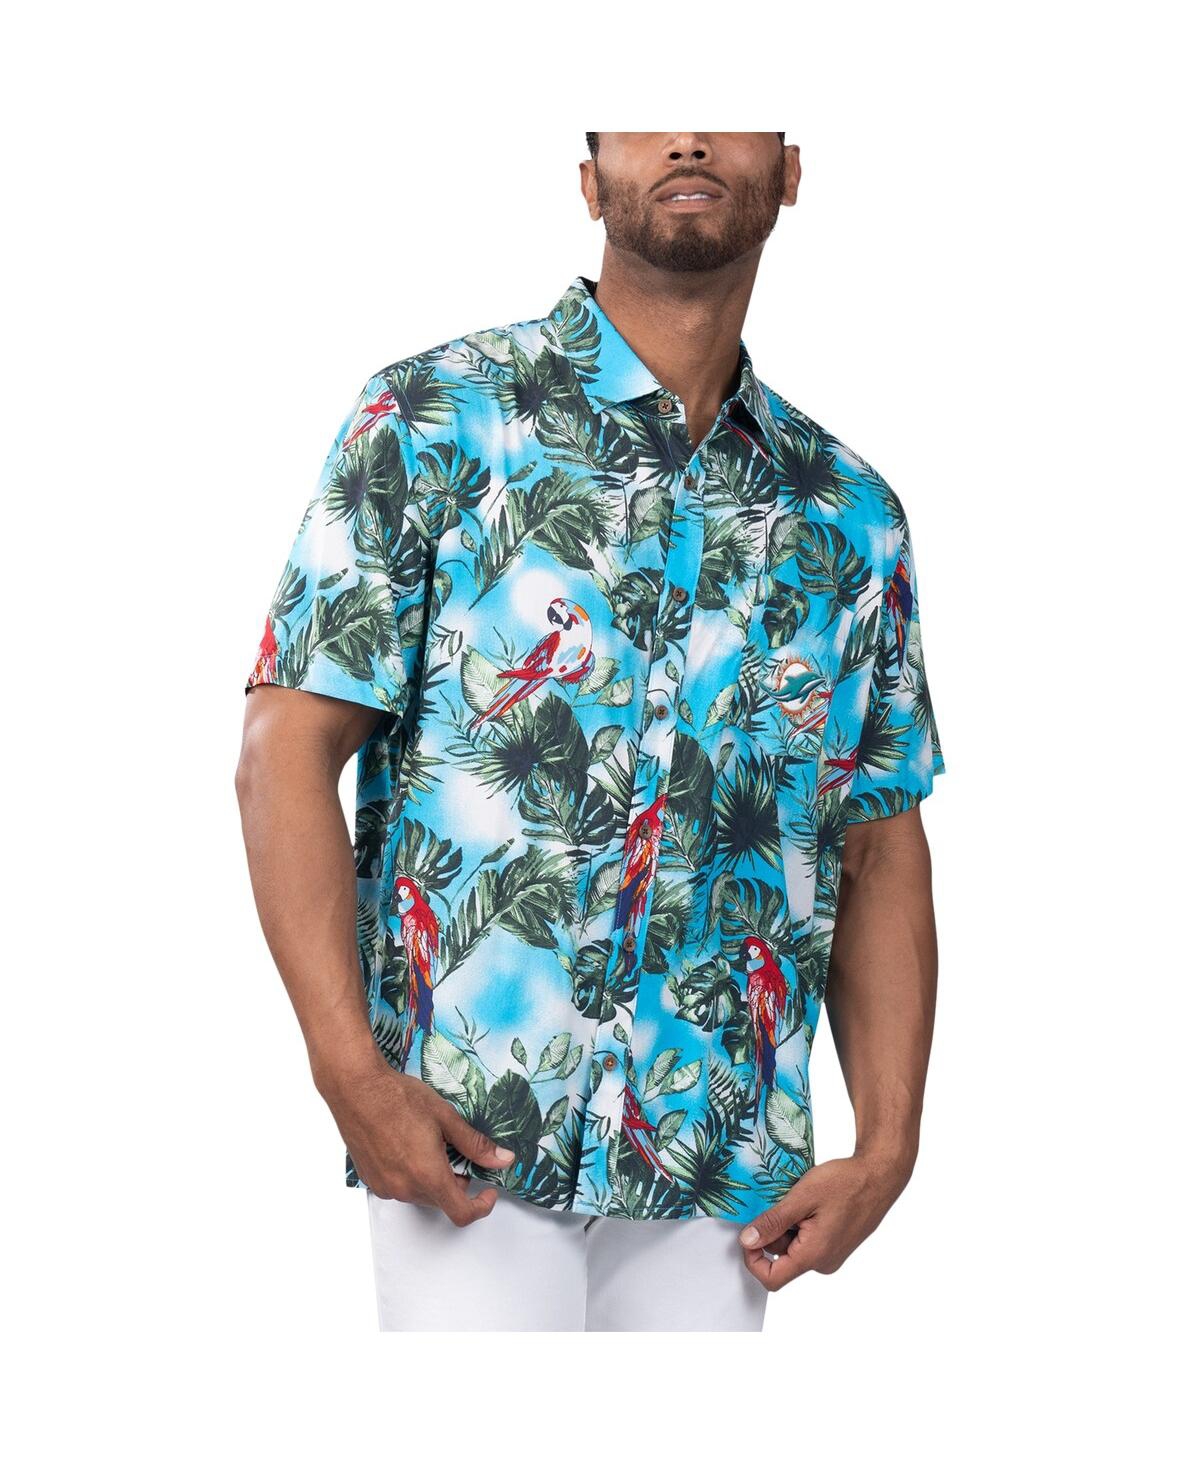 Men's Margaritaville Light Blue Miami Dolphins Jungle Parrot Party Button-Up Shirt - Light Blue